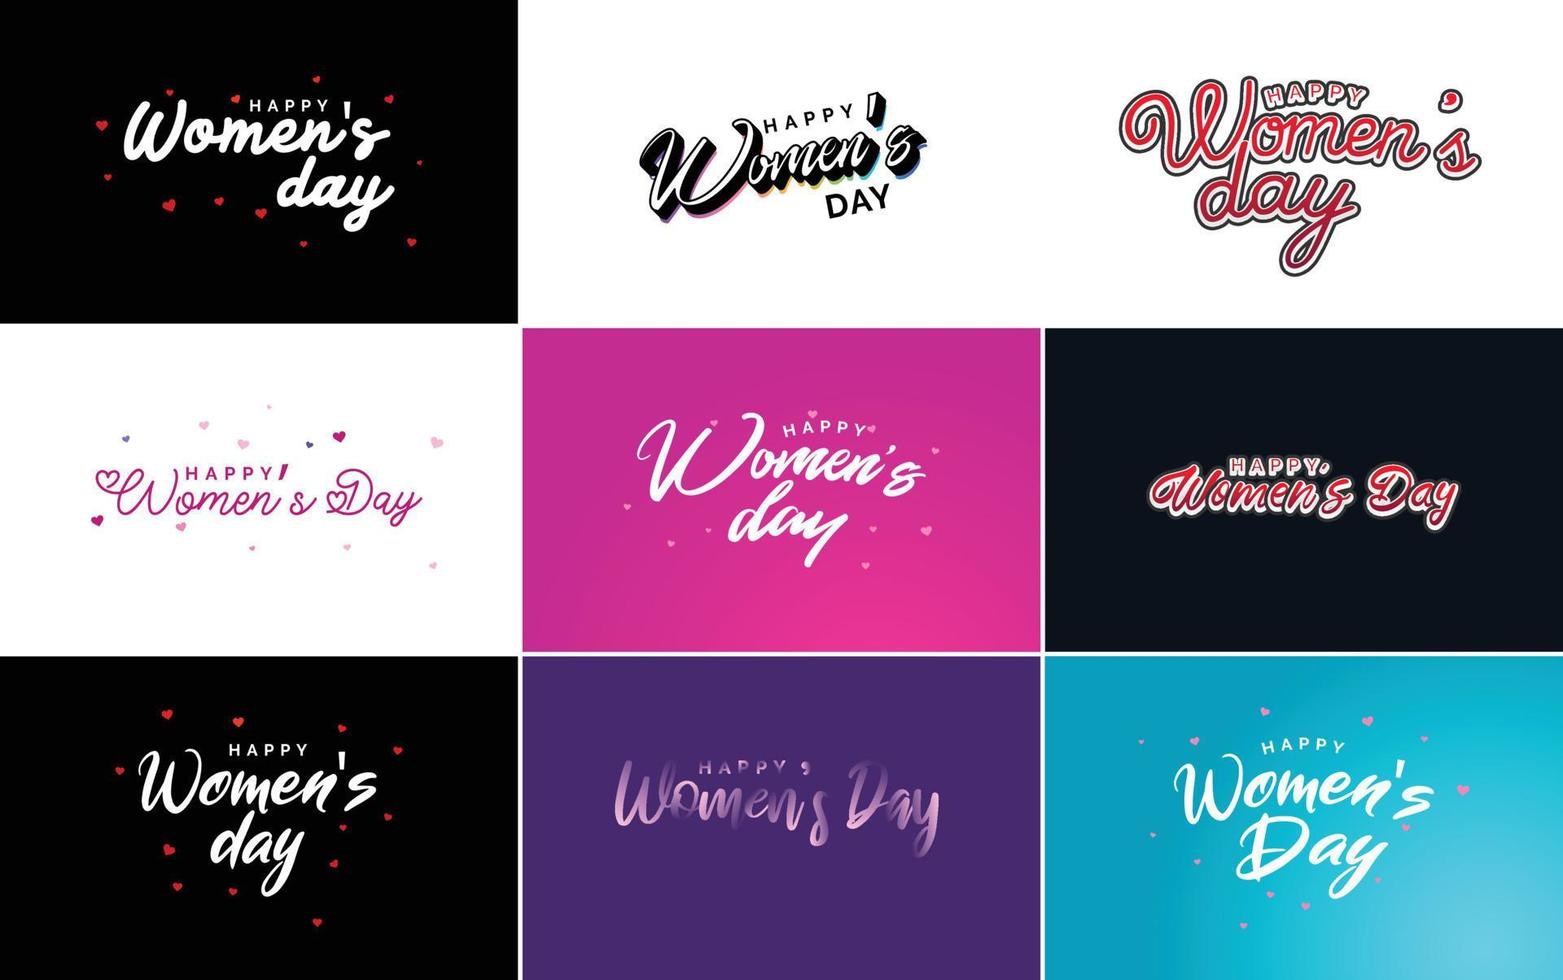 logotipo do dia da mulher feliz abstrato com um design de vetor de amor em rosa. vermelho. e cores pretas